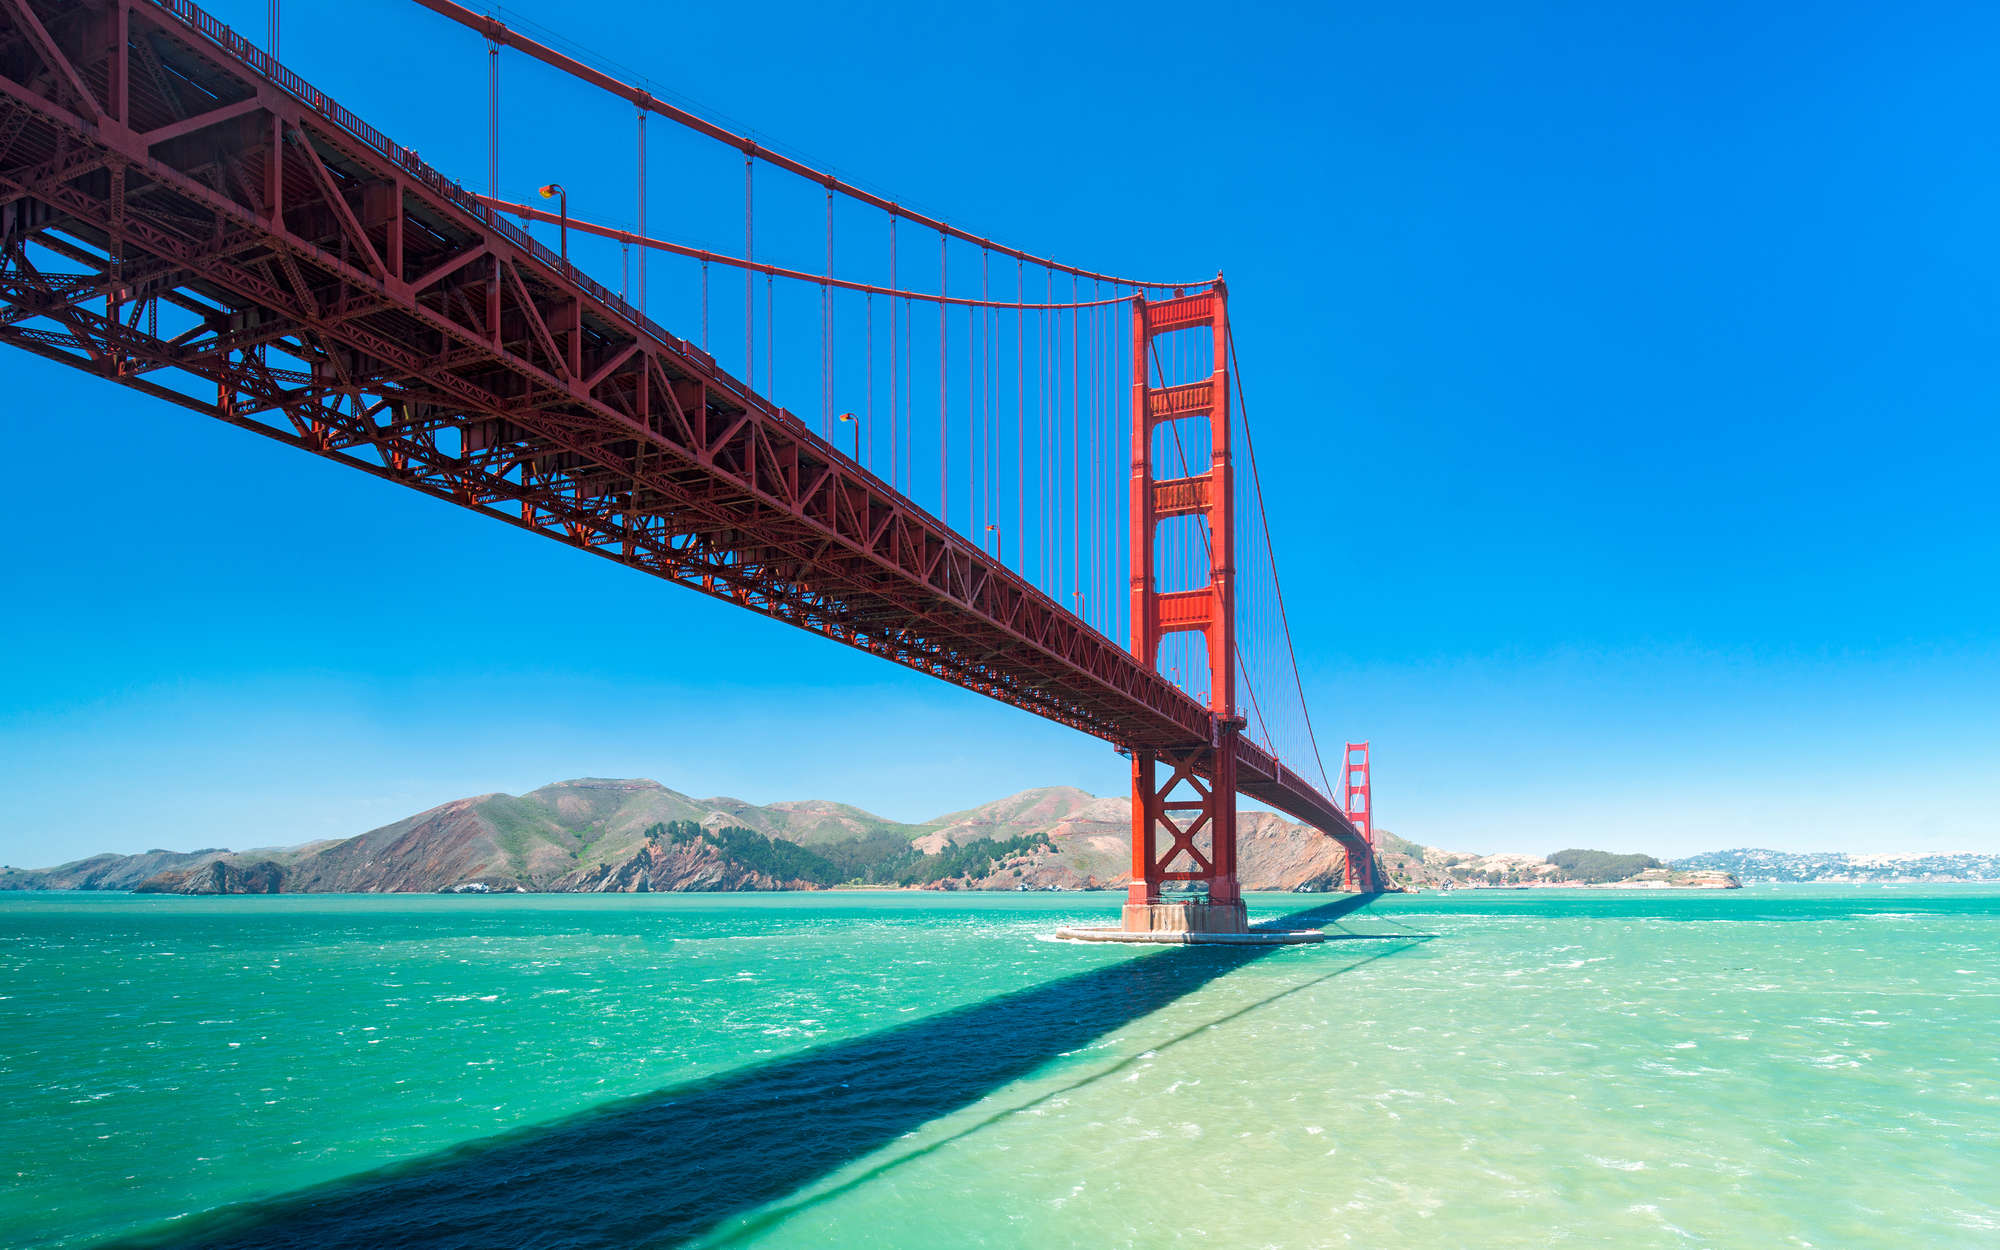             Fototapete Golden Gate Bridge in San Francisco – Mattes Glattvlies
        